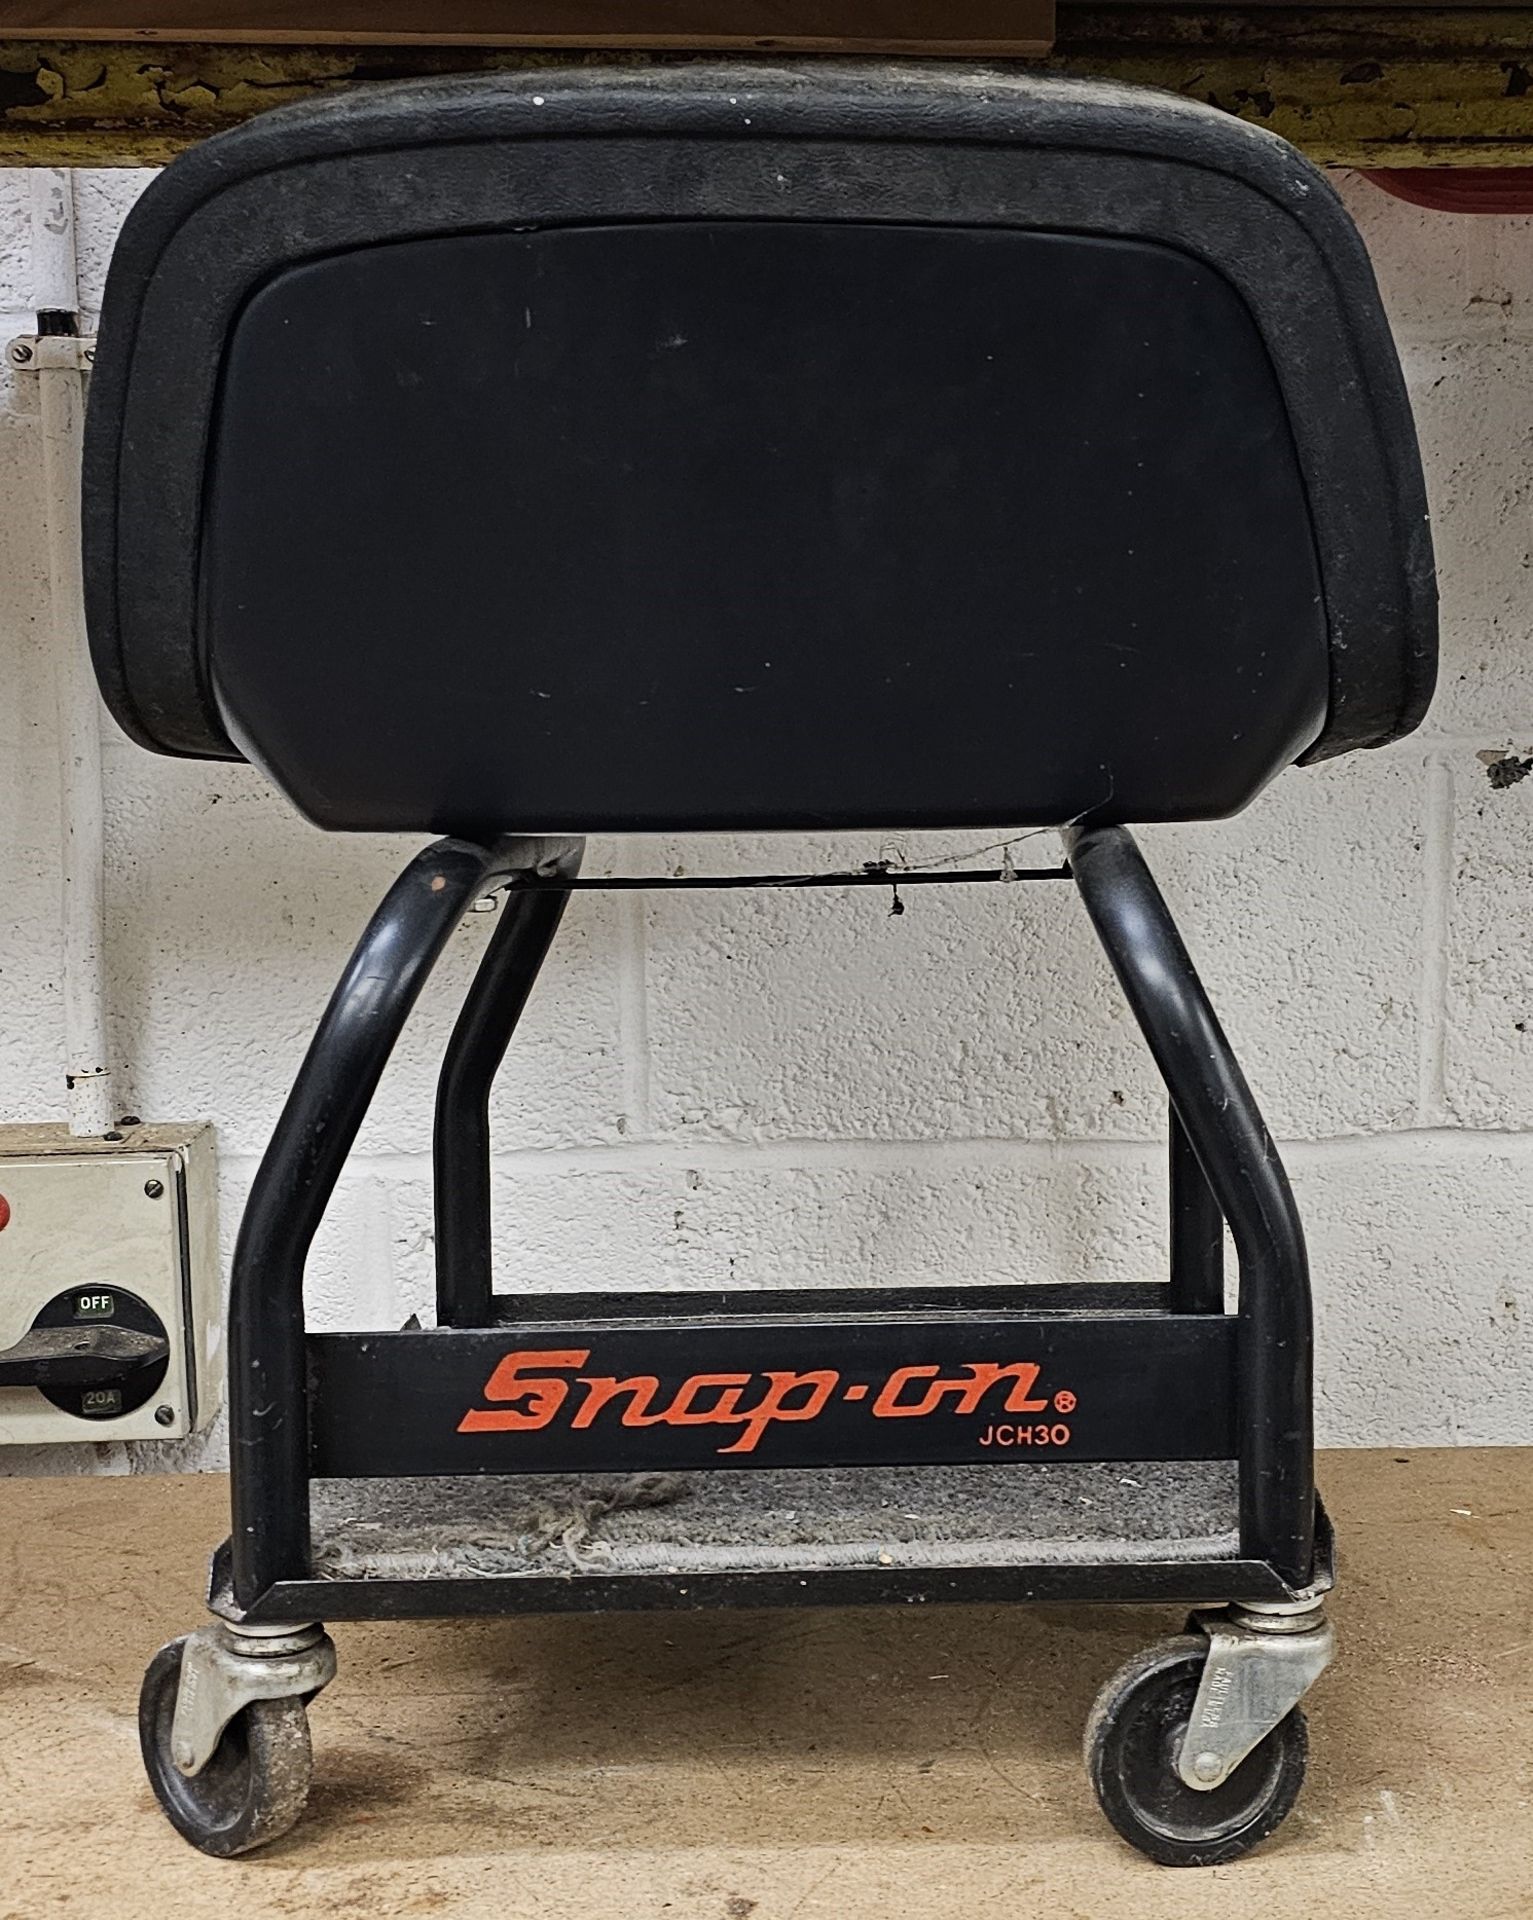 A Snap-on roller chair, model JCH30 - Bild 2 aus 3